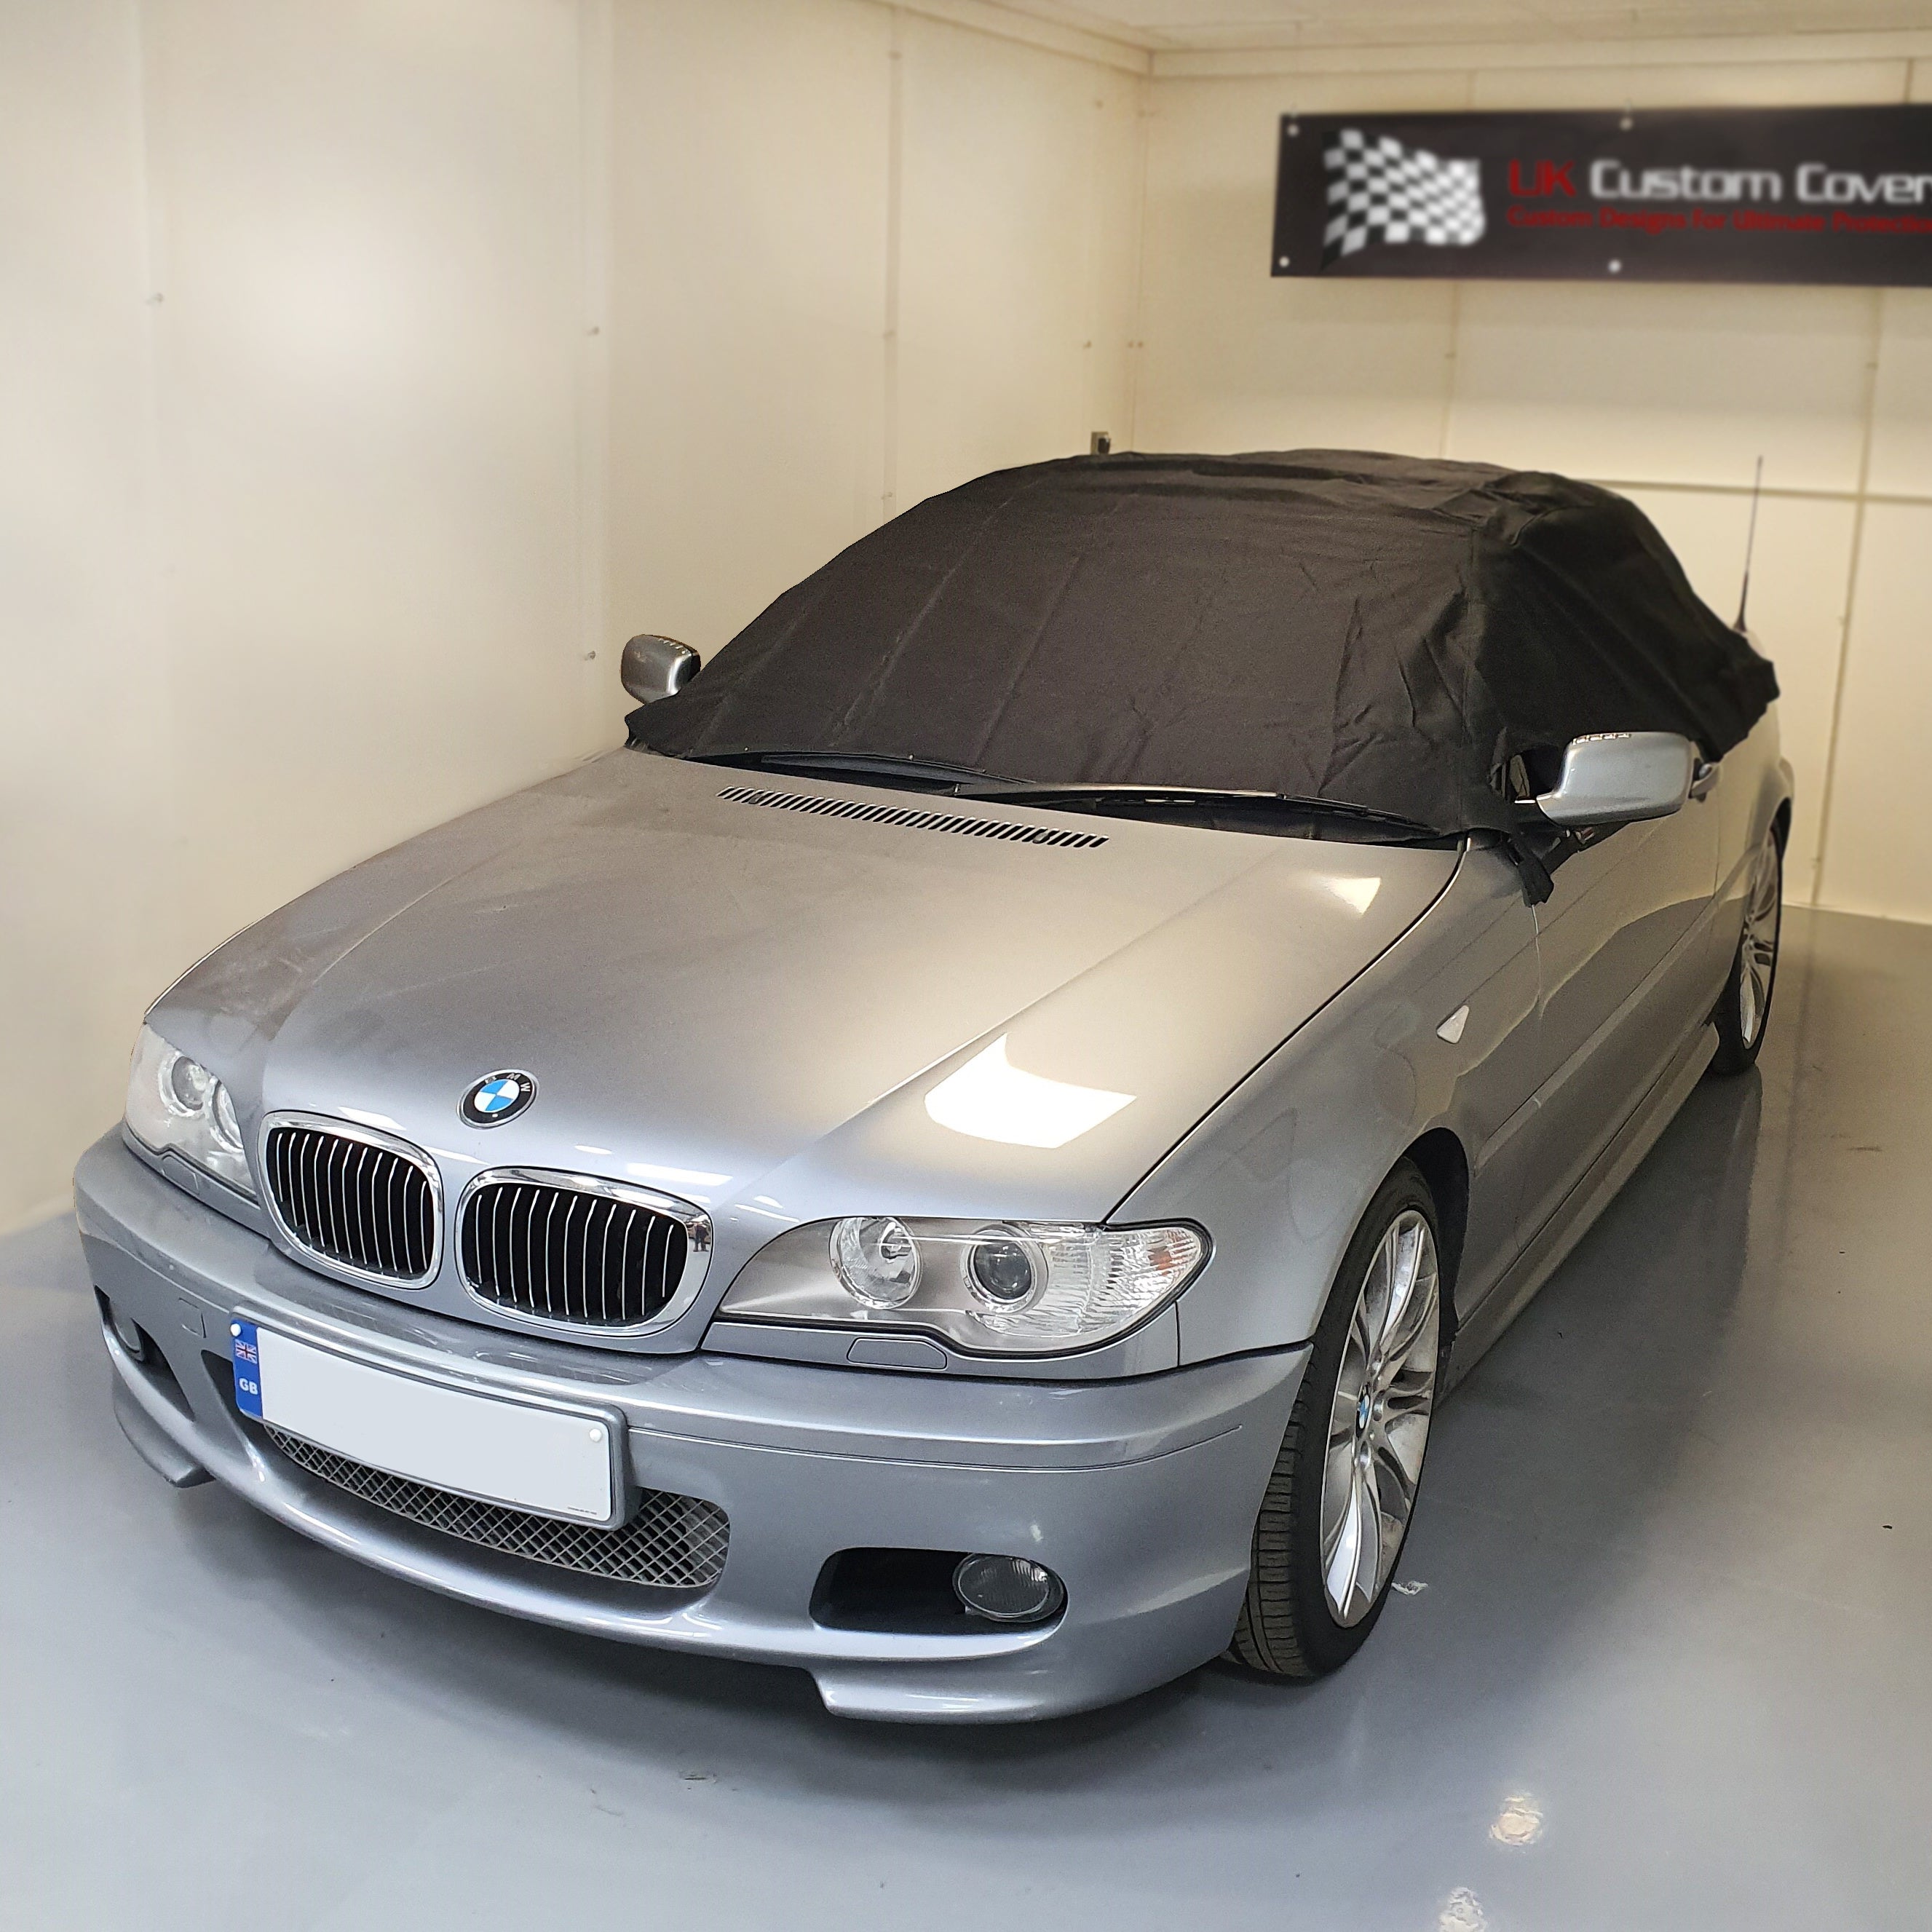 Demi-couverture de toit souple pour BMW E46 - 1999 à 2005 (571) - NOIR